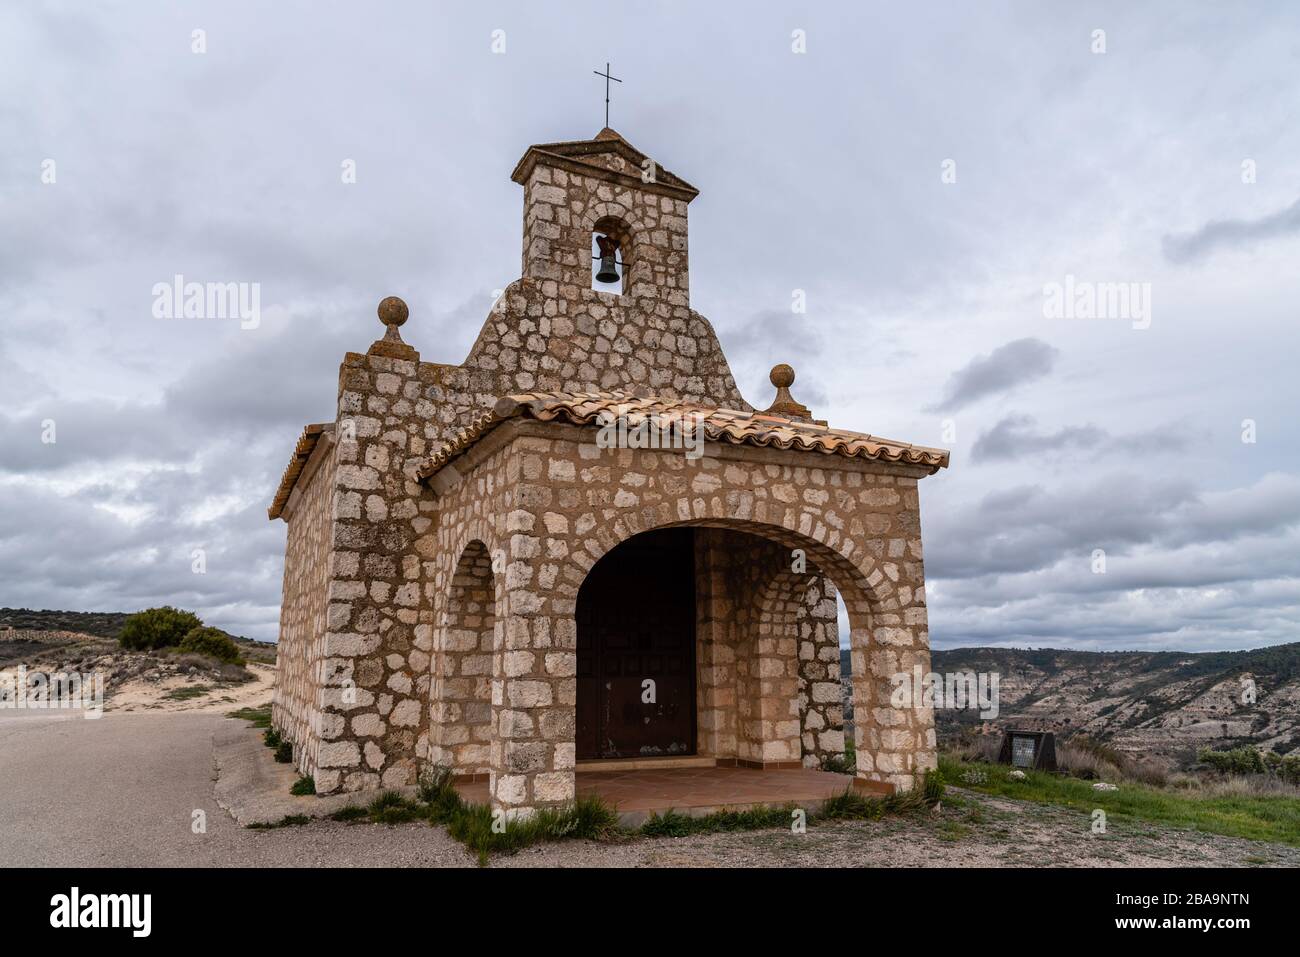 Pastrana, Spagna - 29 febbraio 2020: Eremo del Sacro cuore di Gesù in cima alla città medievale di Pastrana. Foto Stock